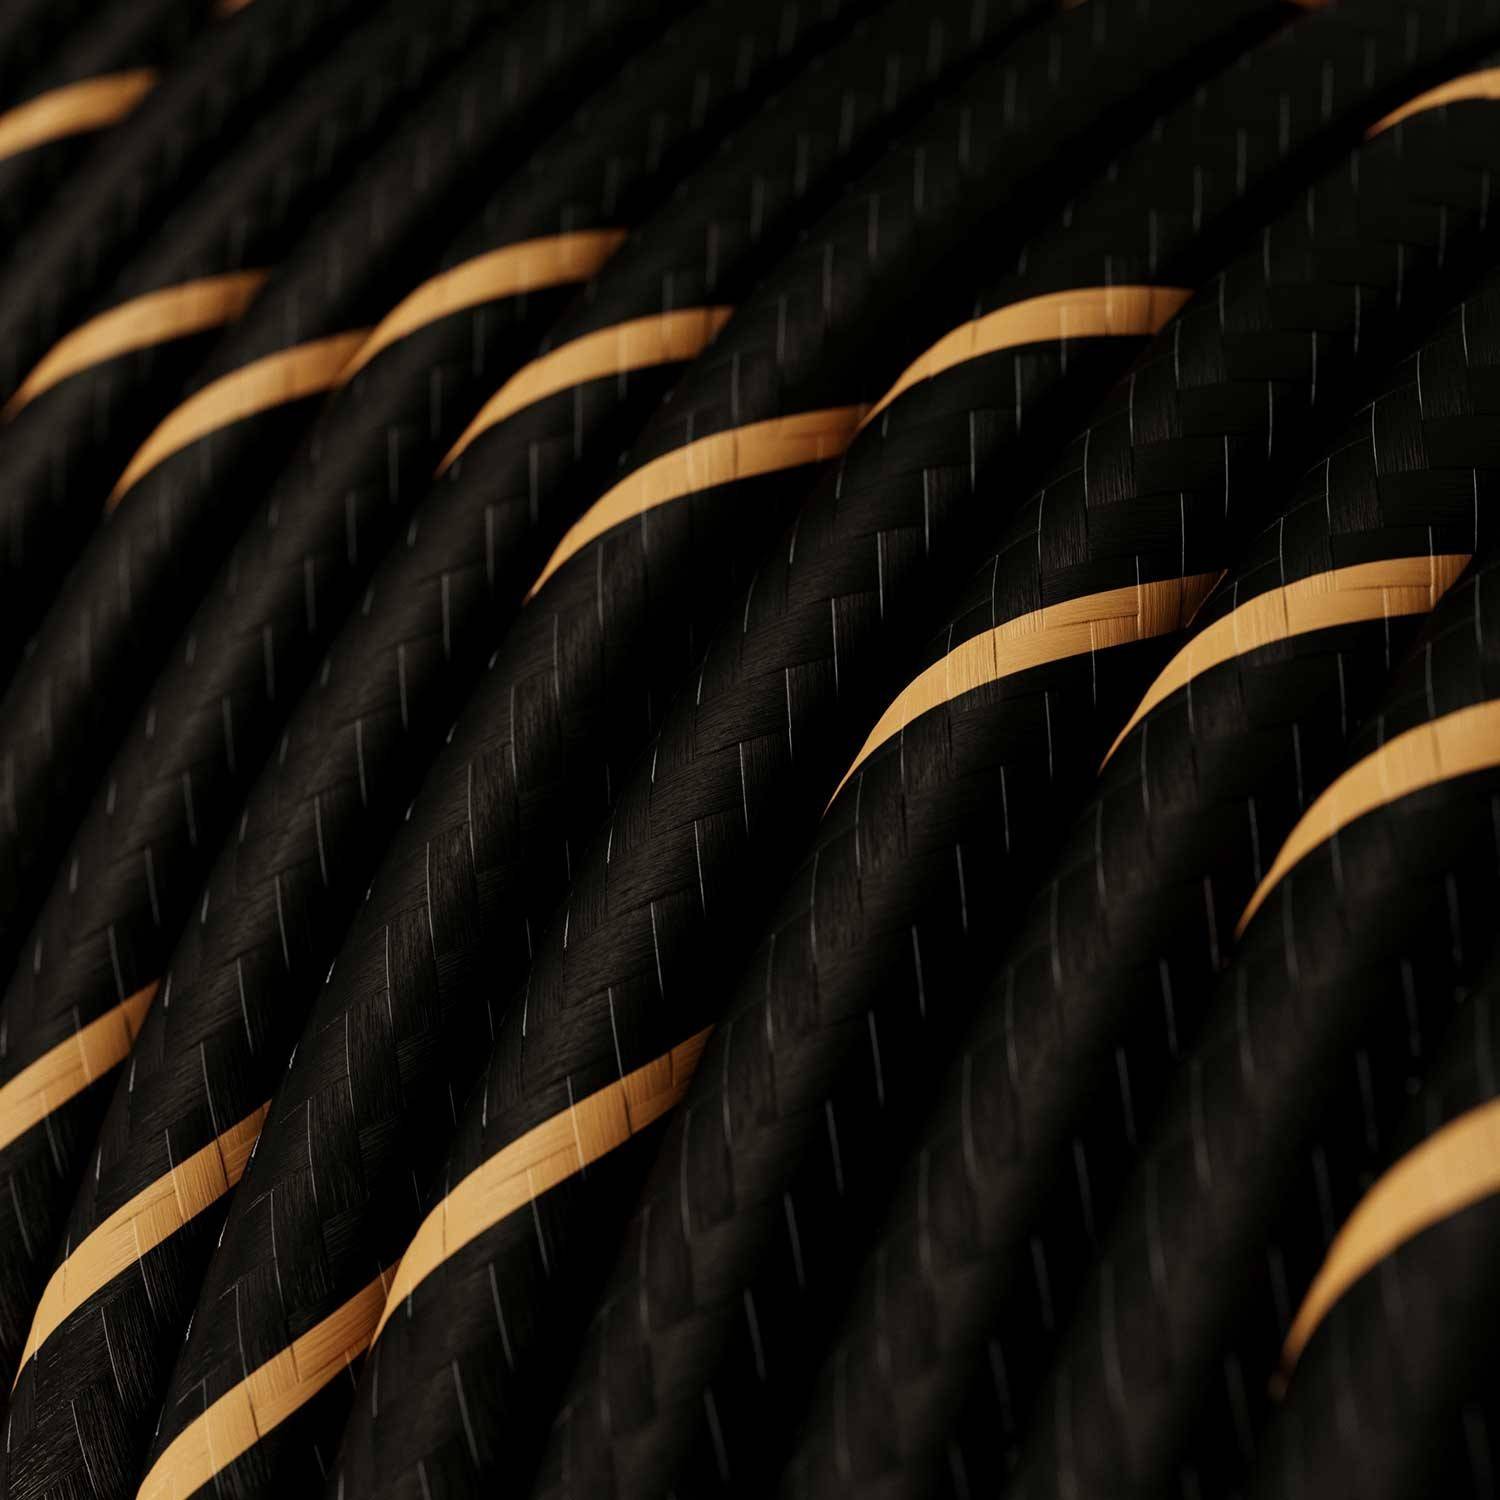 Cablu textil Vertigo lucios negru și auriu - Originalul Creative-Cables - ERM42 rotund 2x0.75mm / 3x0.75mm